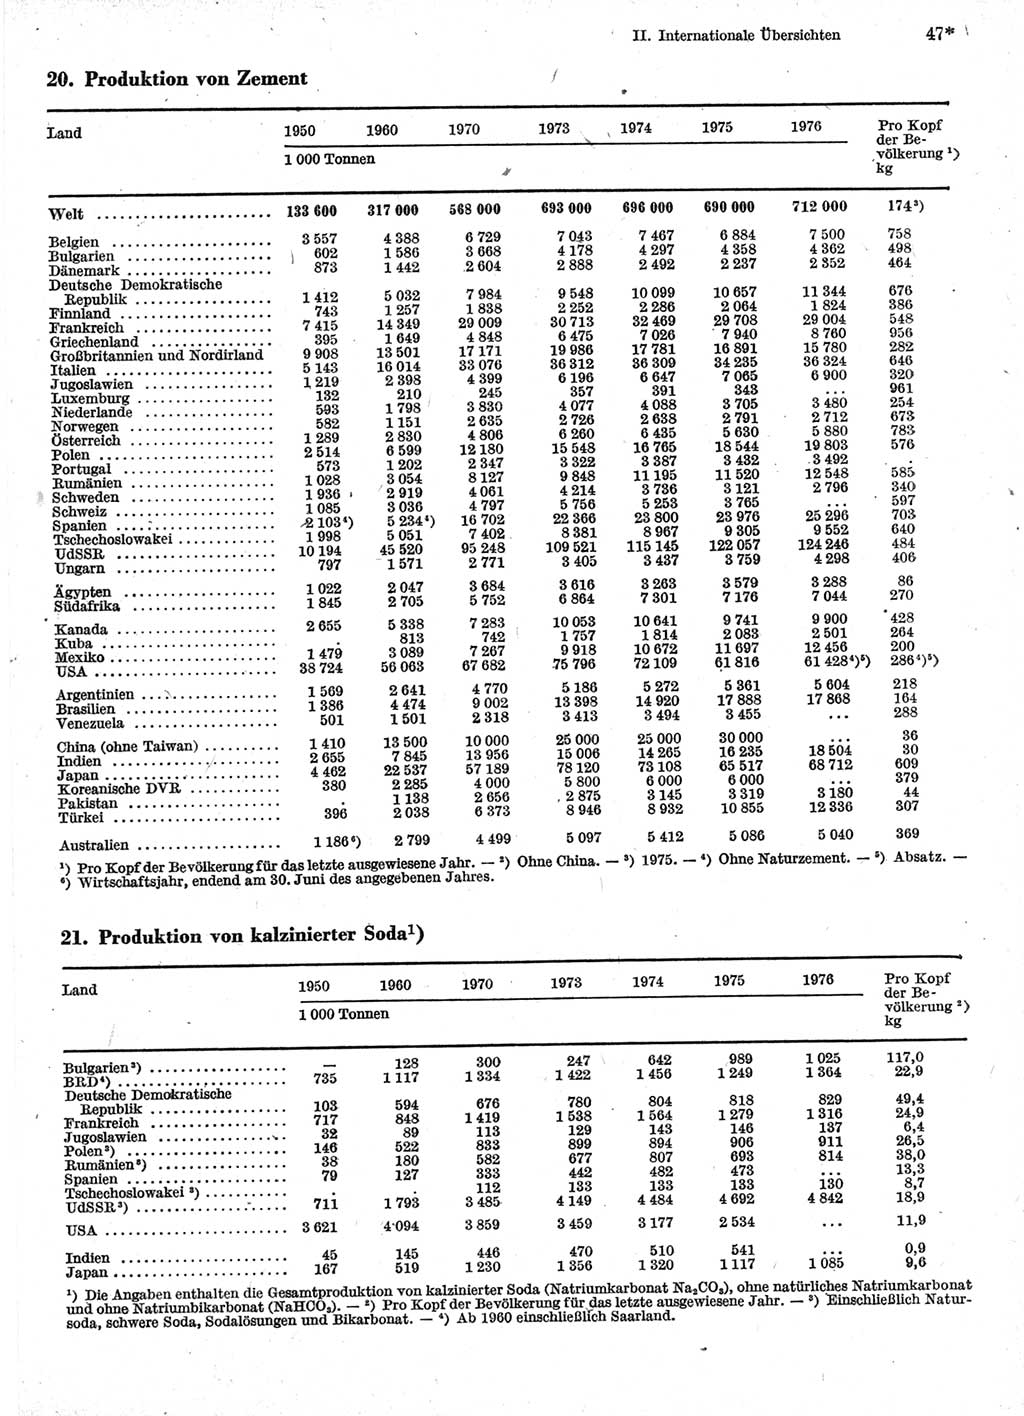 Statistisches Jahrbuch der Deutschen Demokratischen Republik (DDR) 1978, Seite 47 (Stat. Jb. DDR 1978, S. 47)